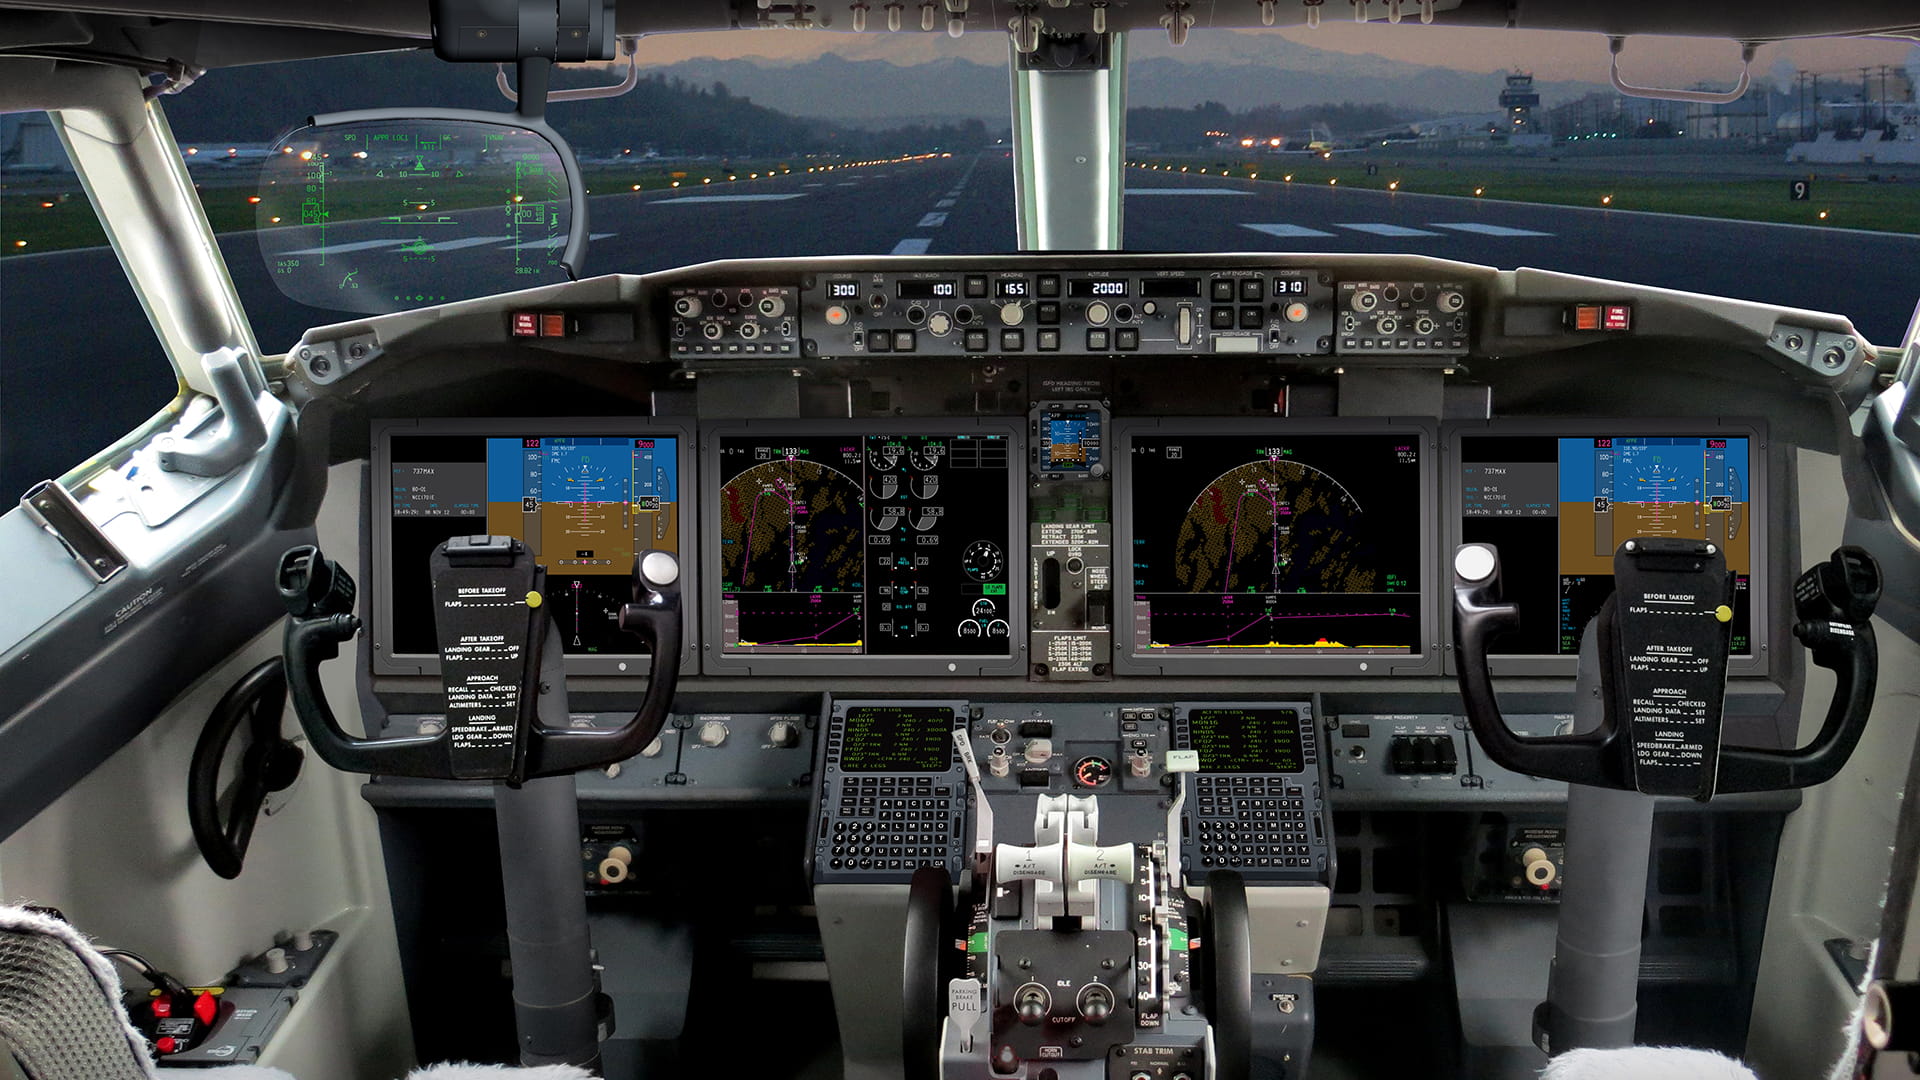 Boeing 737 cockpit